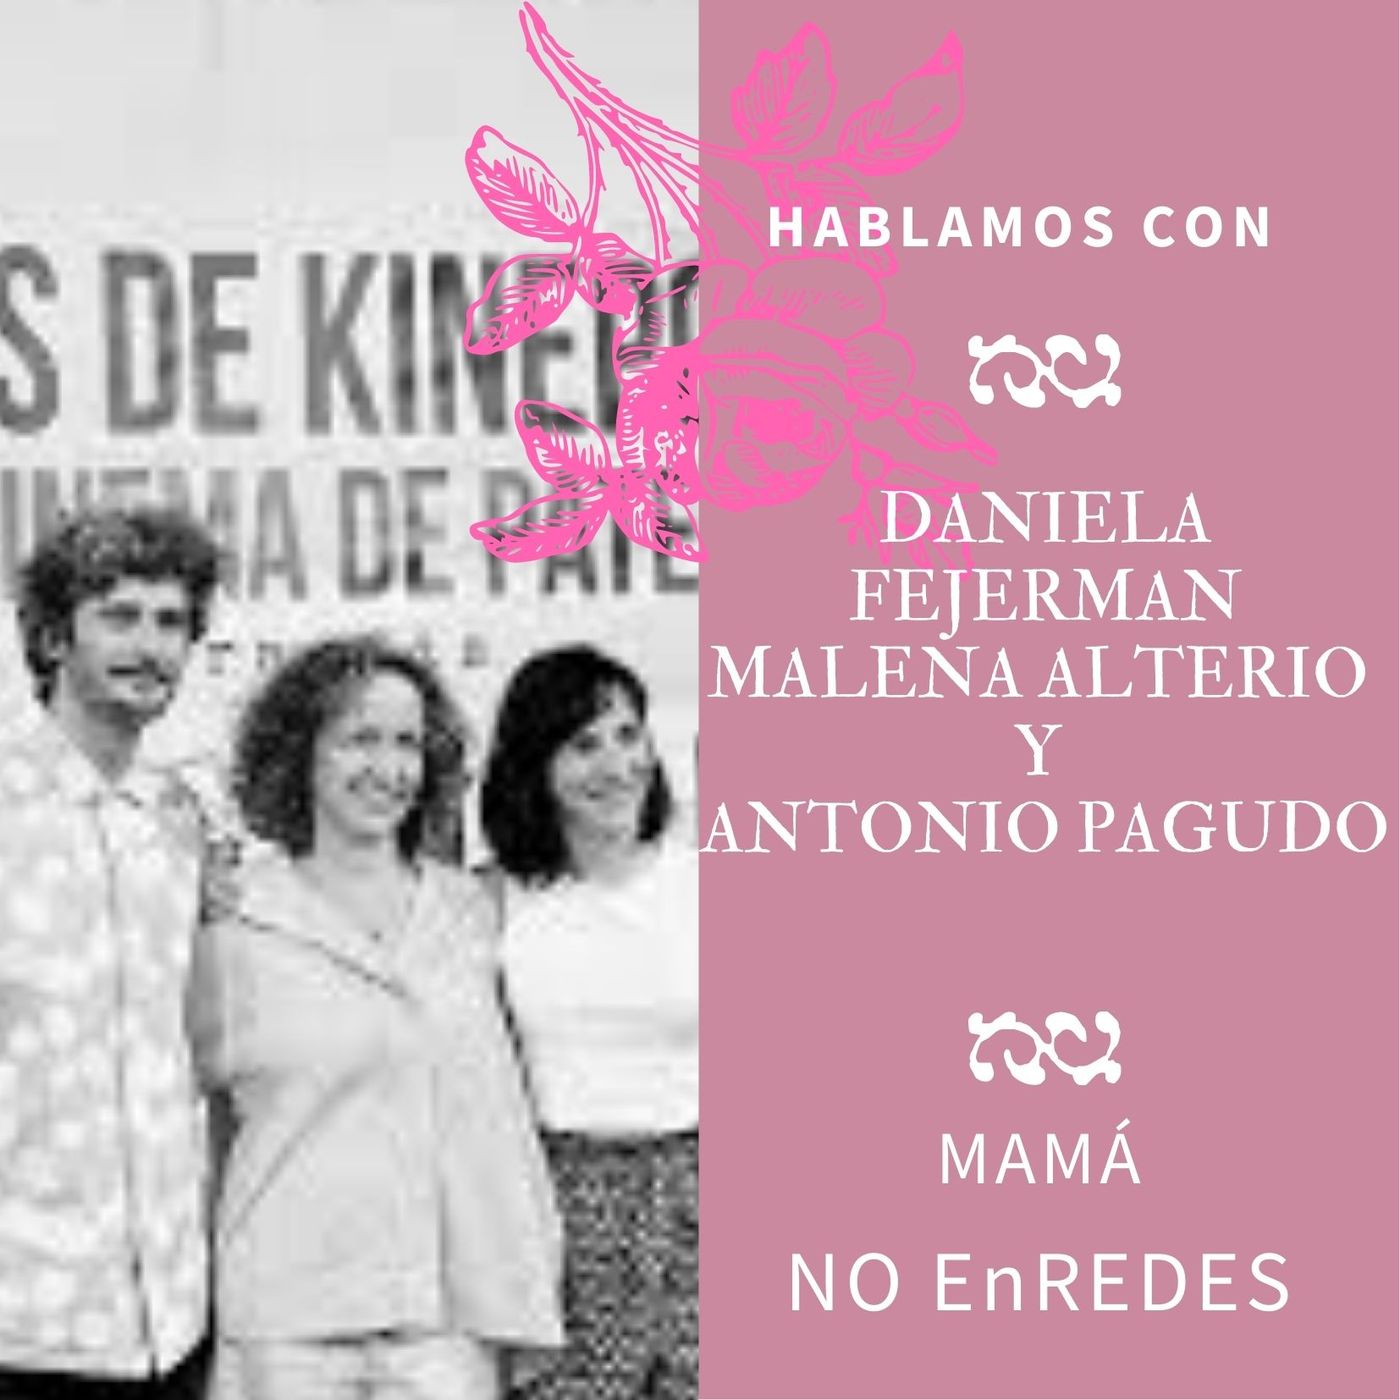 Nadie hablará de nosotras by María Abad 2x01 |DANIELA FEJERMAN, MALENA ALTERIO Y ANTONIO PAGUDO- MAMÁ NO ENREDES